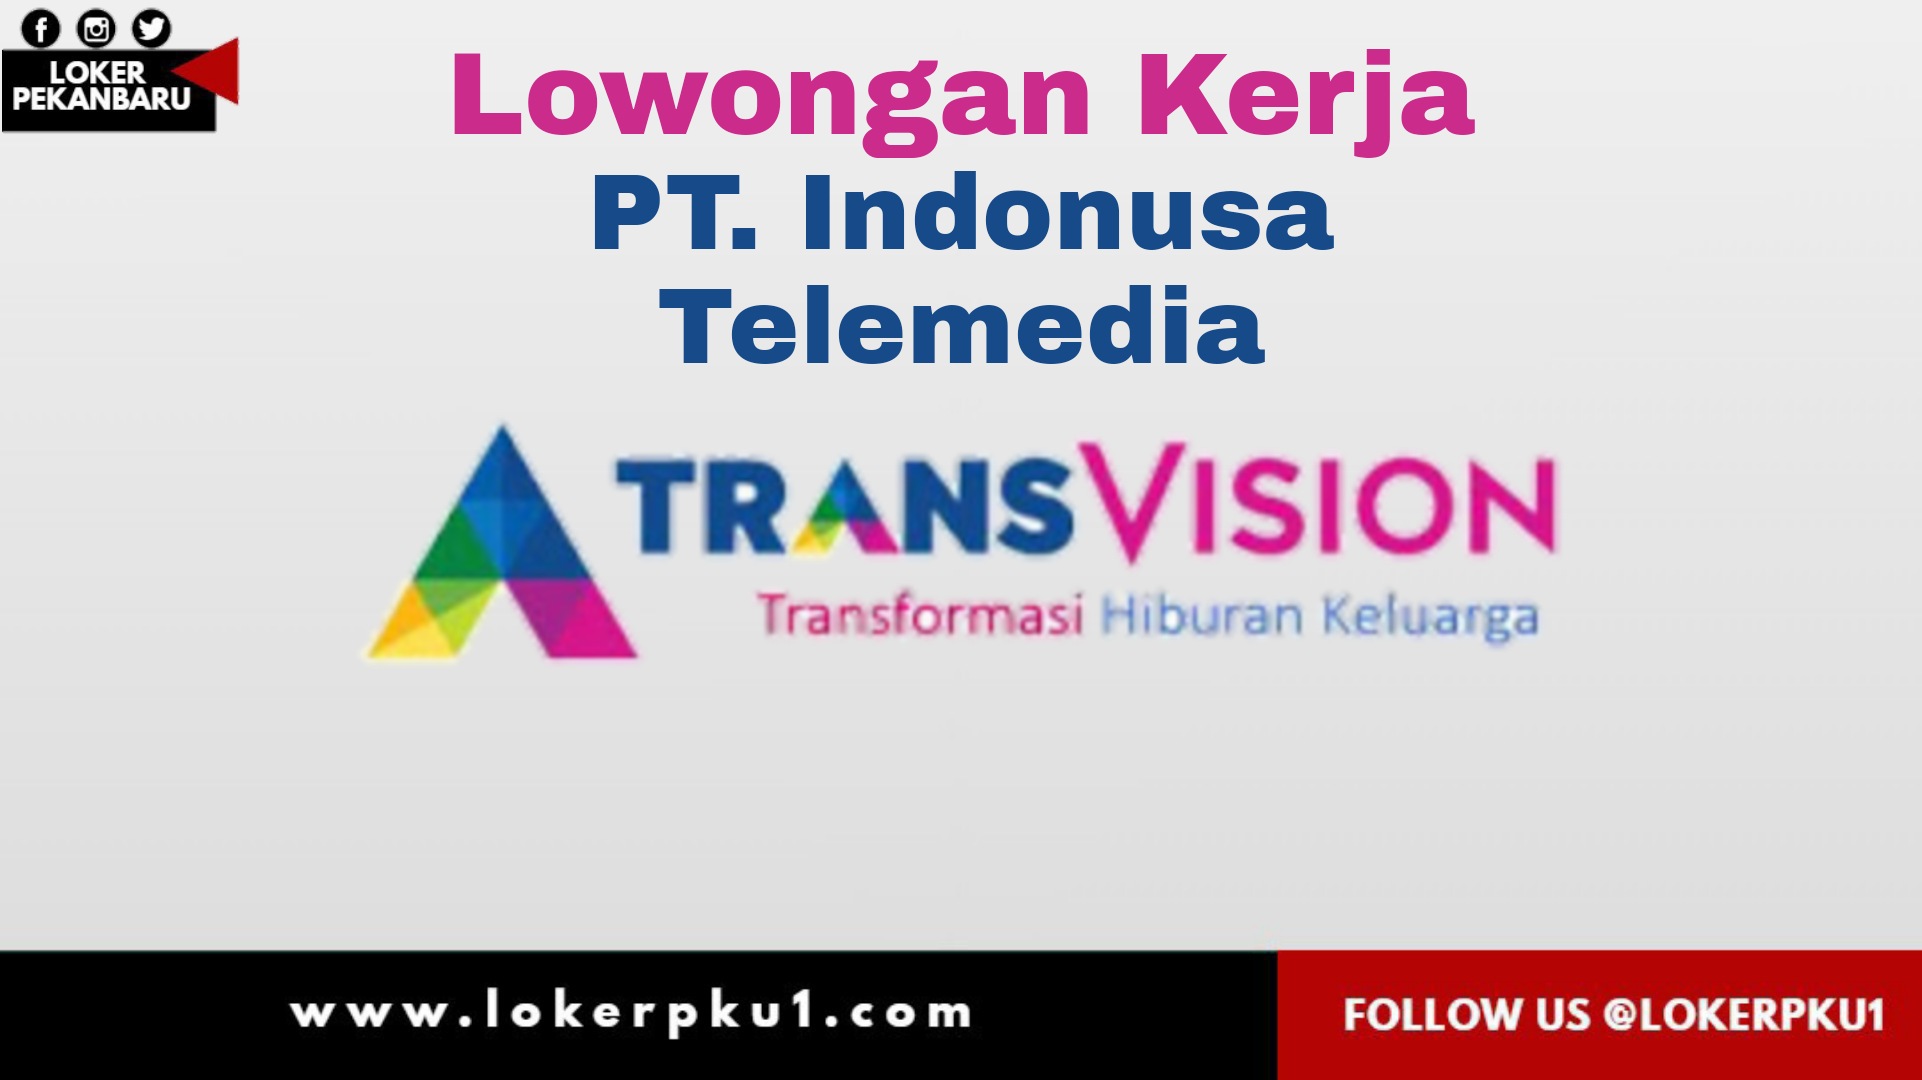 Lowongan Kerja Pt Indonusa Telemedia Transvision Pekanbaru Januari 2021